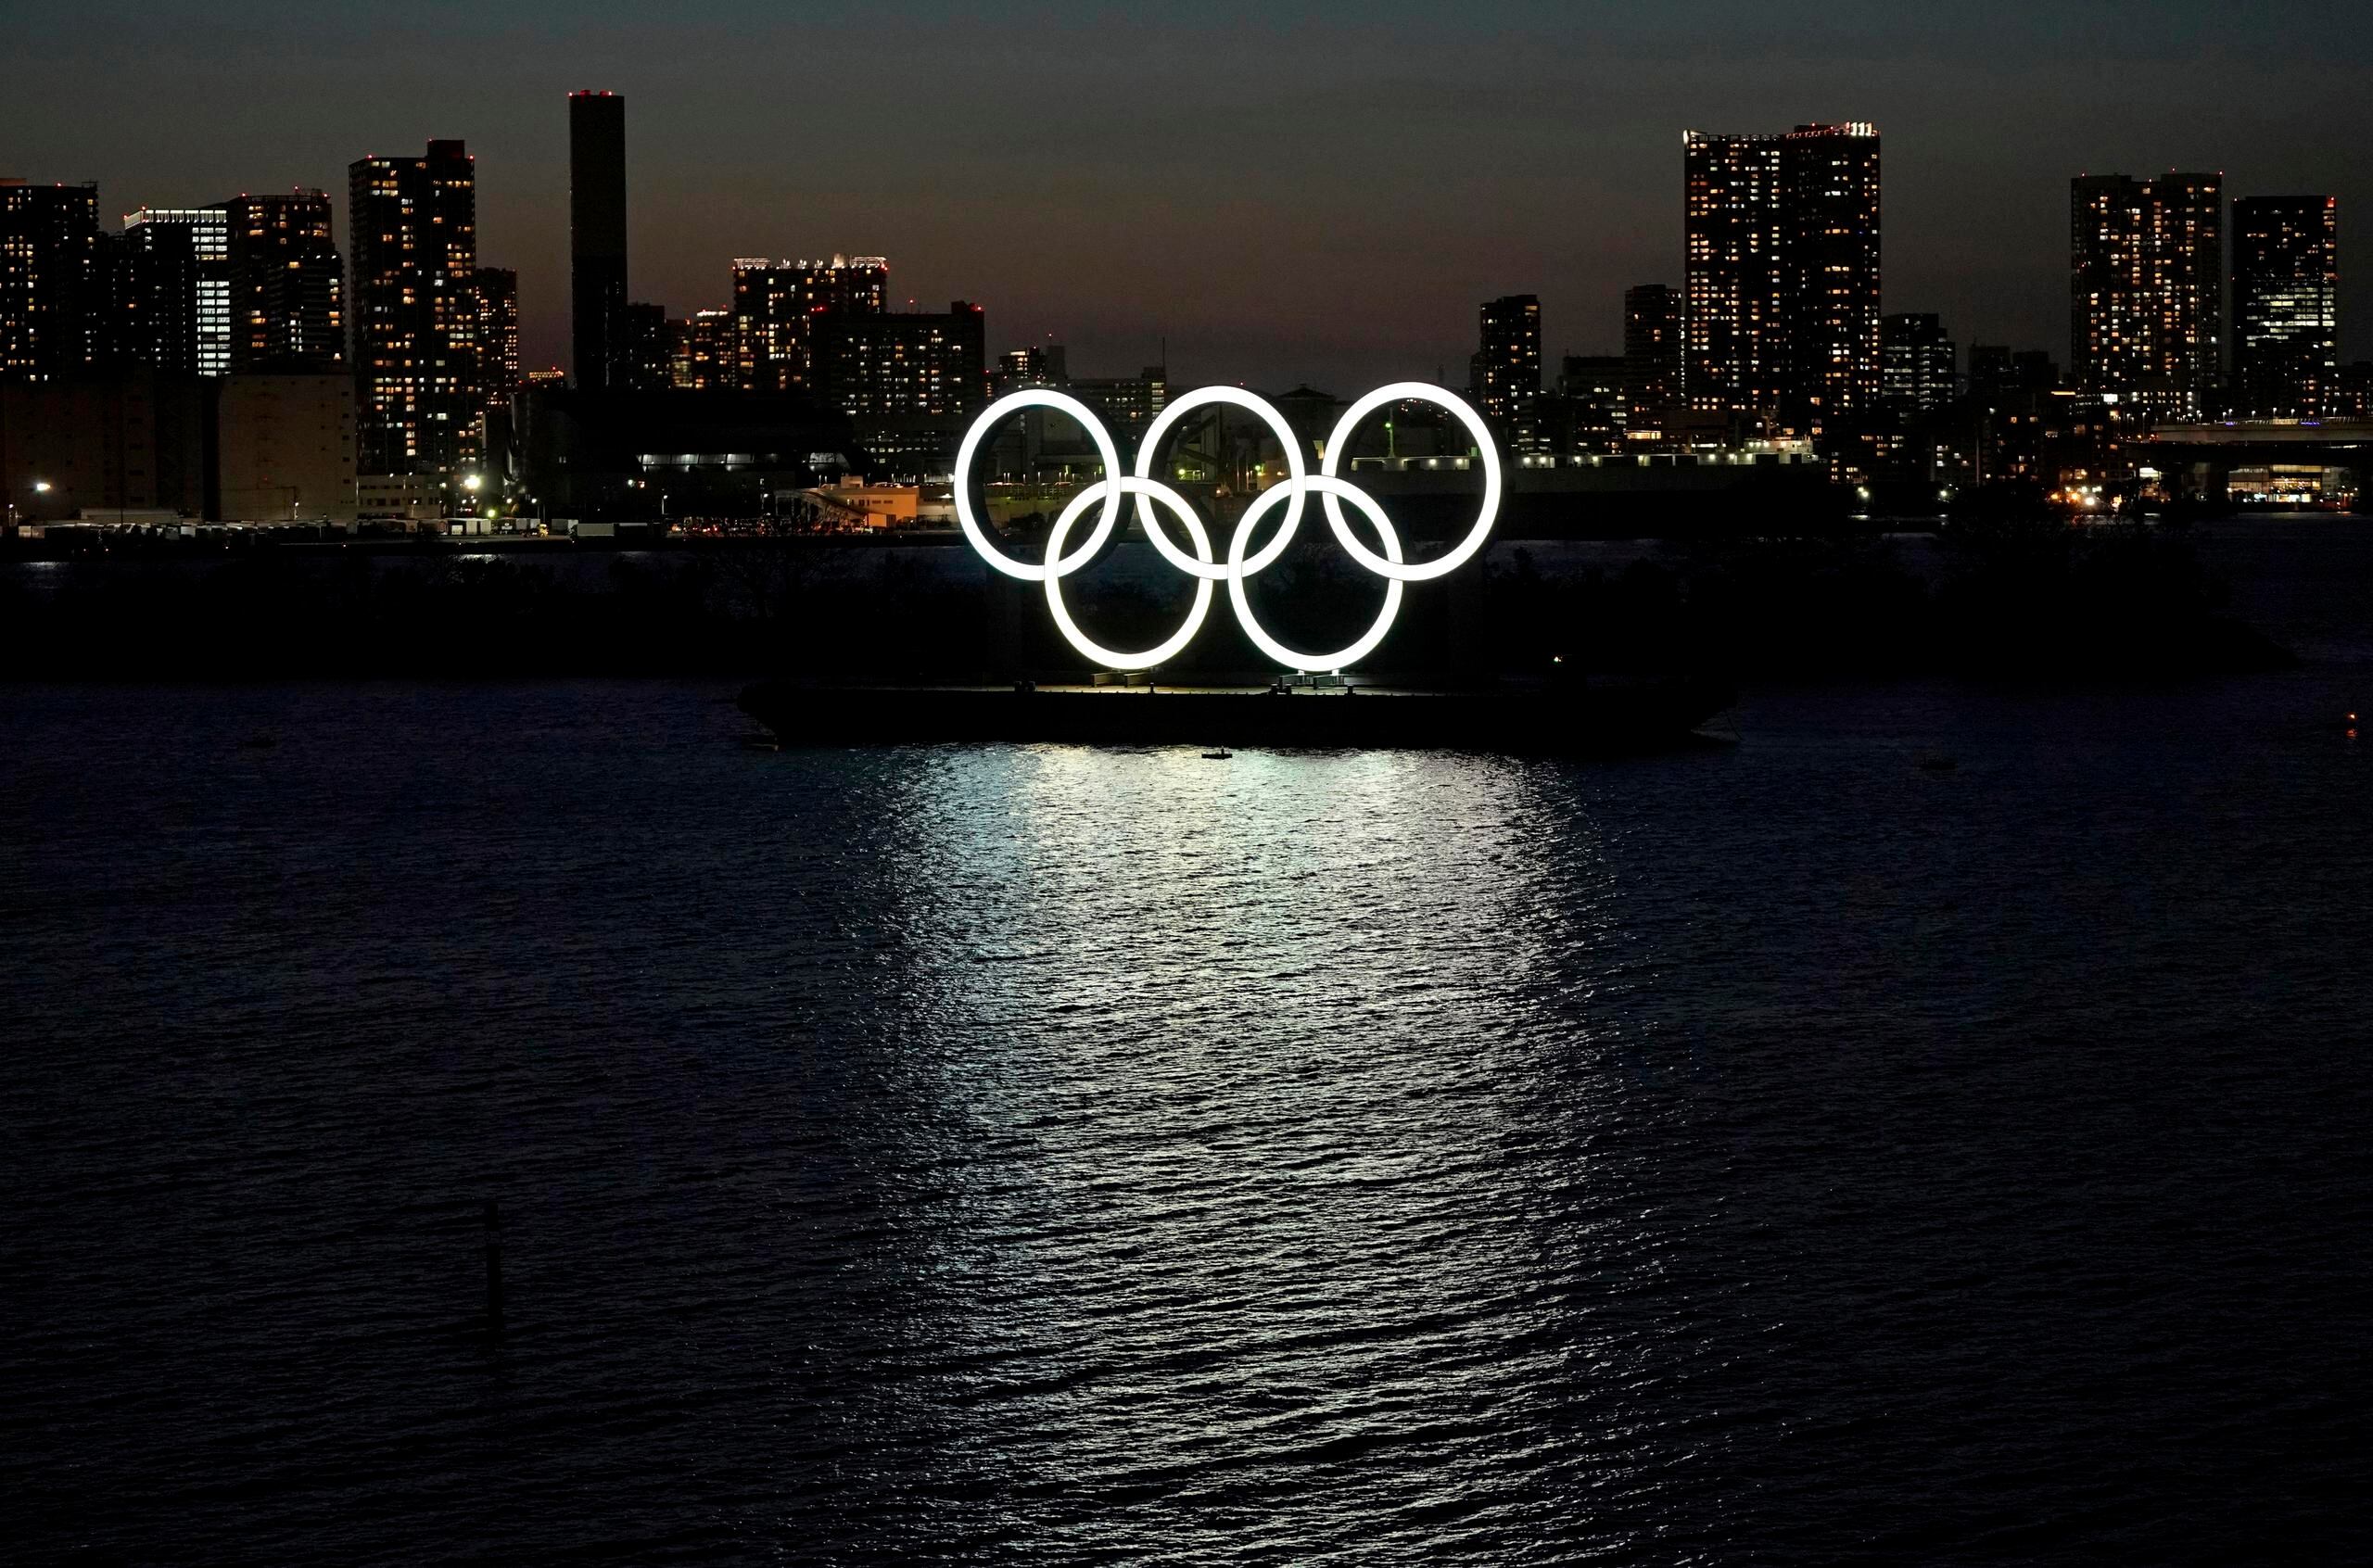 El inicio de los Juegos Olímpicos fue aplazado hasta el 23 de julio de 2021, seguido por los Paralímpicos el 24 de agosto.